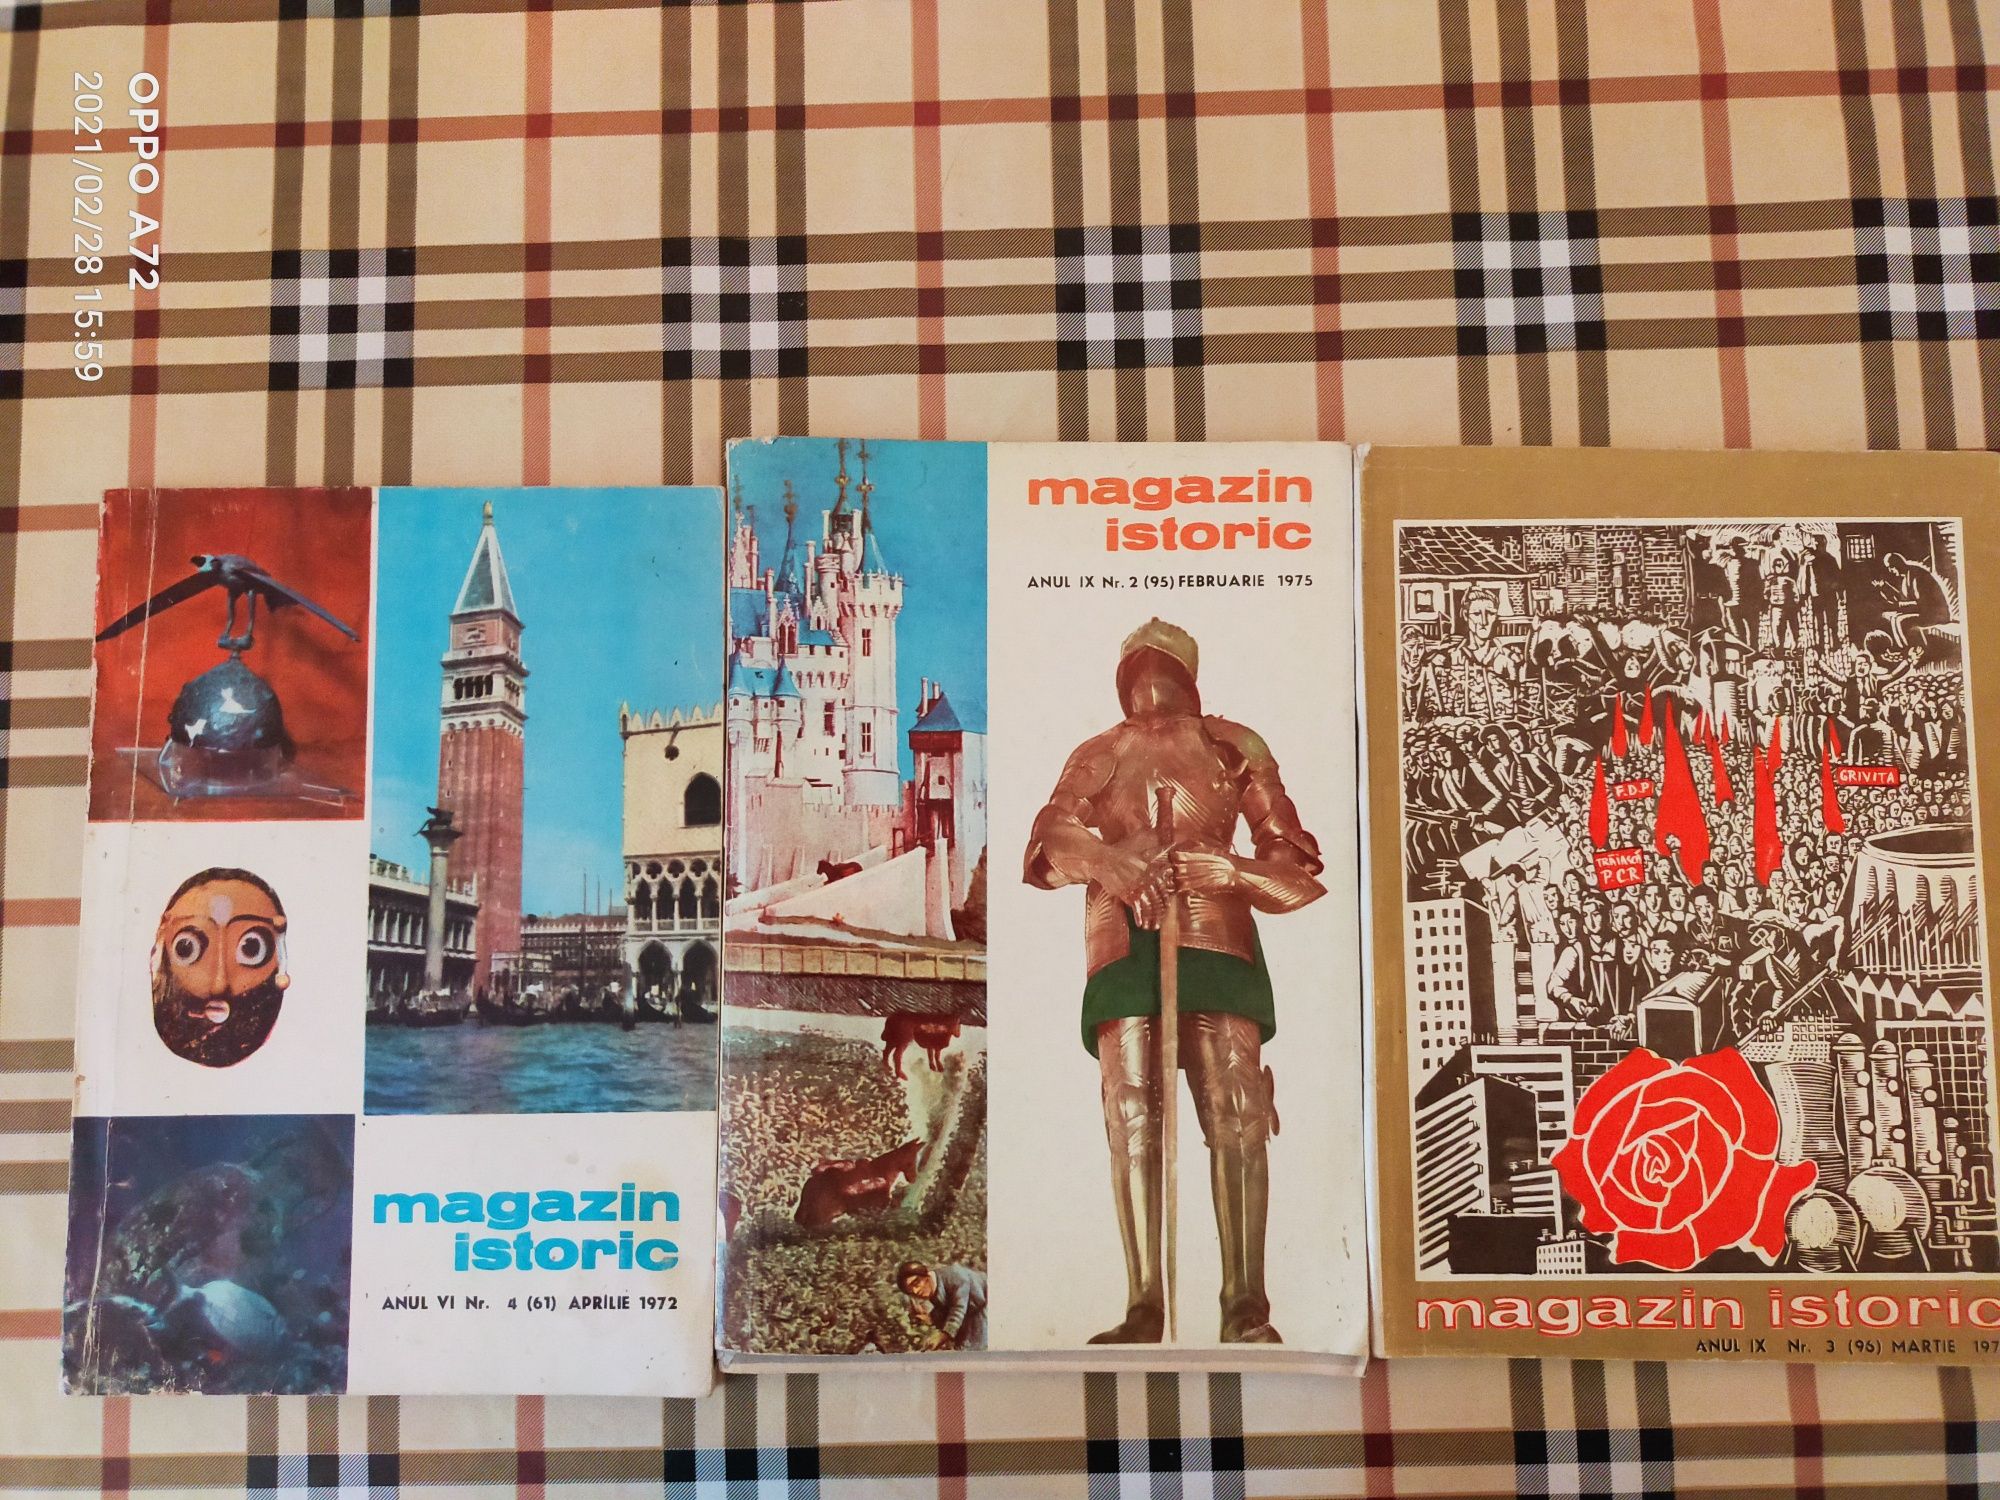 Minicolectie "Magazin Istoric"